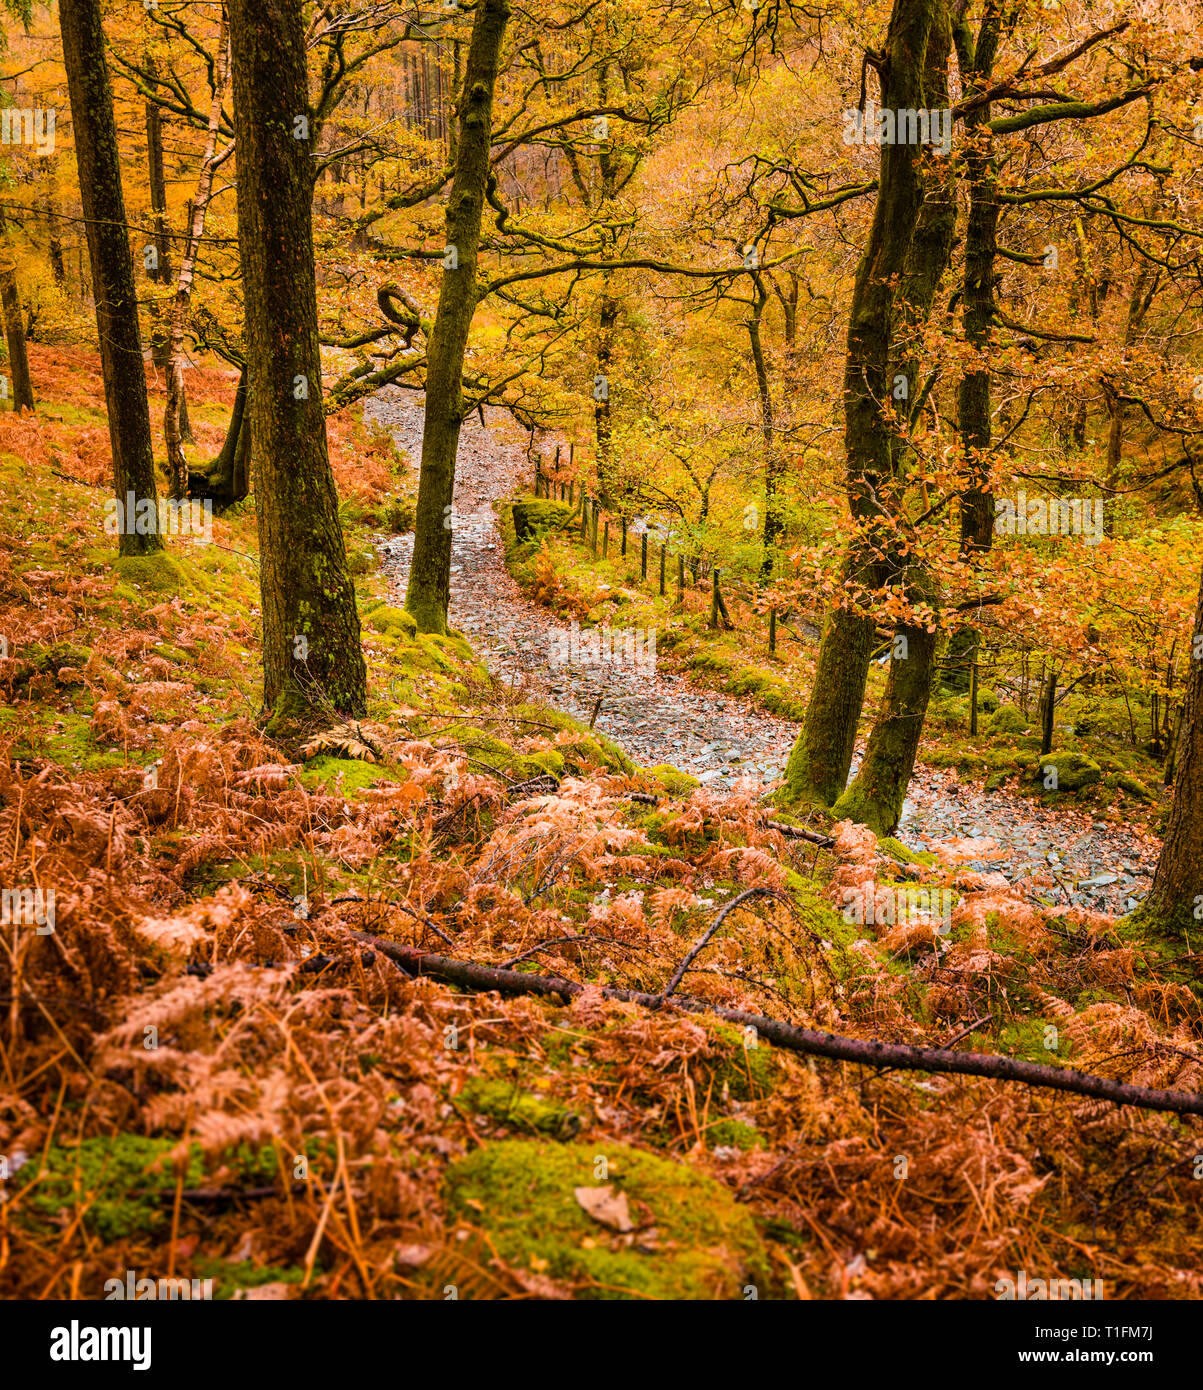 Von Burg Crag im Borrowdale Wandern zwischen den Bergen auf dem Weg zur Dalt Holz in die herbstlichen Farben der Bäume und Farne. Stockfoto